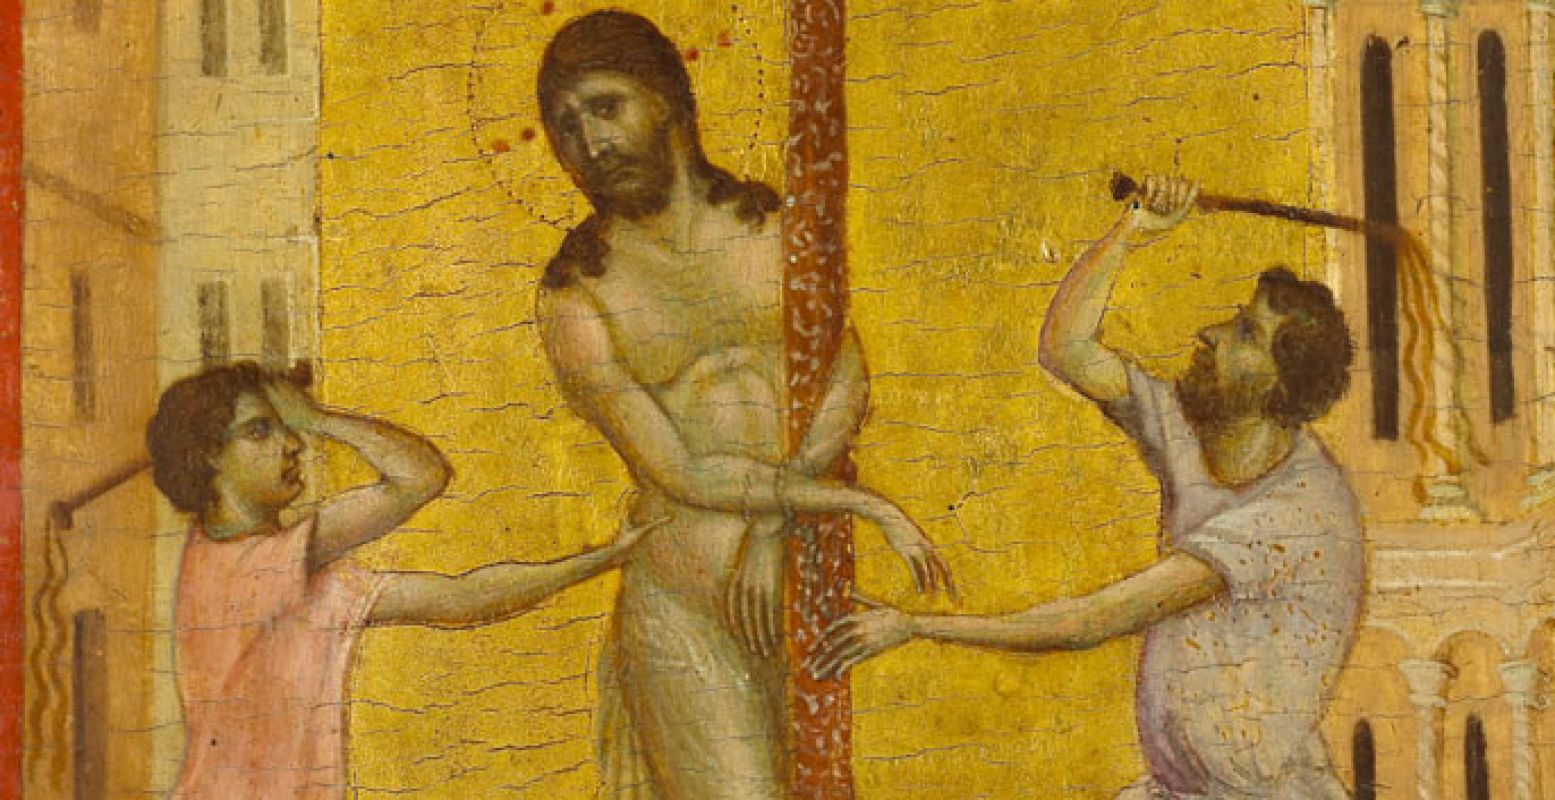 Cimabue (ca. 1240-ca. 1302) De geseling van Christus, ca. 1280 Paneel, 24,8 x 20 cm The Frick Collection, New York; foto Michael Bodycomb